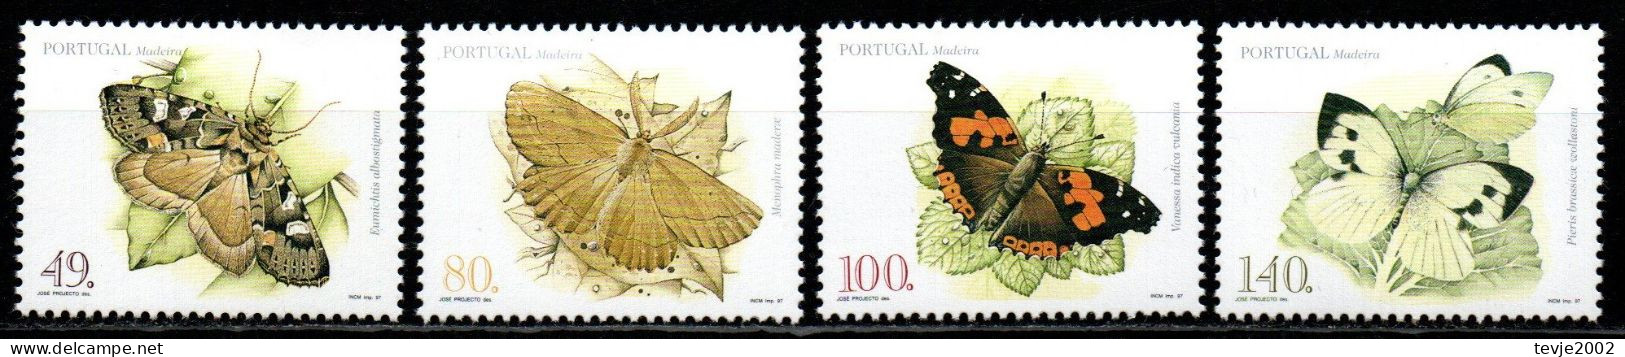 Portugal Madeira 1997 - Mi.Nr. 187 - 190 A - Postfrisch MNH - Tiere Animals Schmetterlinge Butterflies - Vlinders